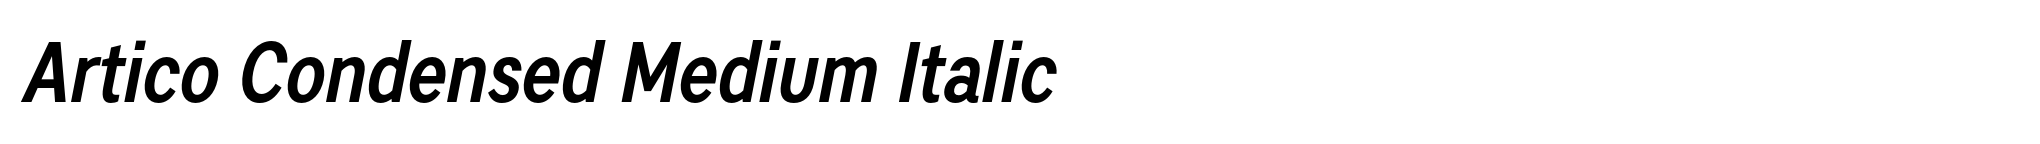 Artico Condensed Medium Italic image